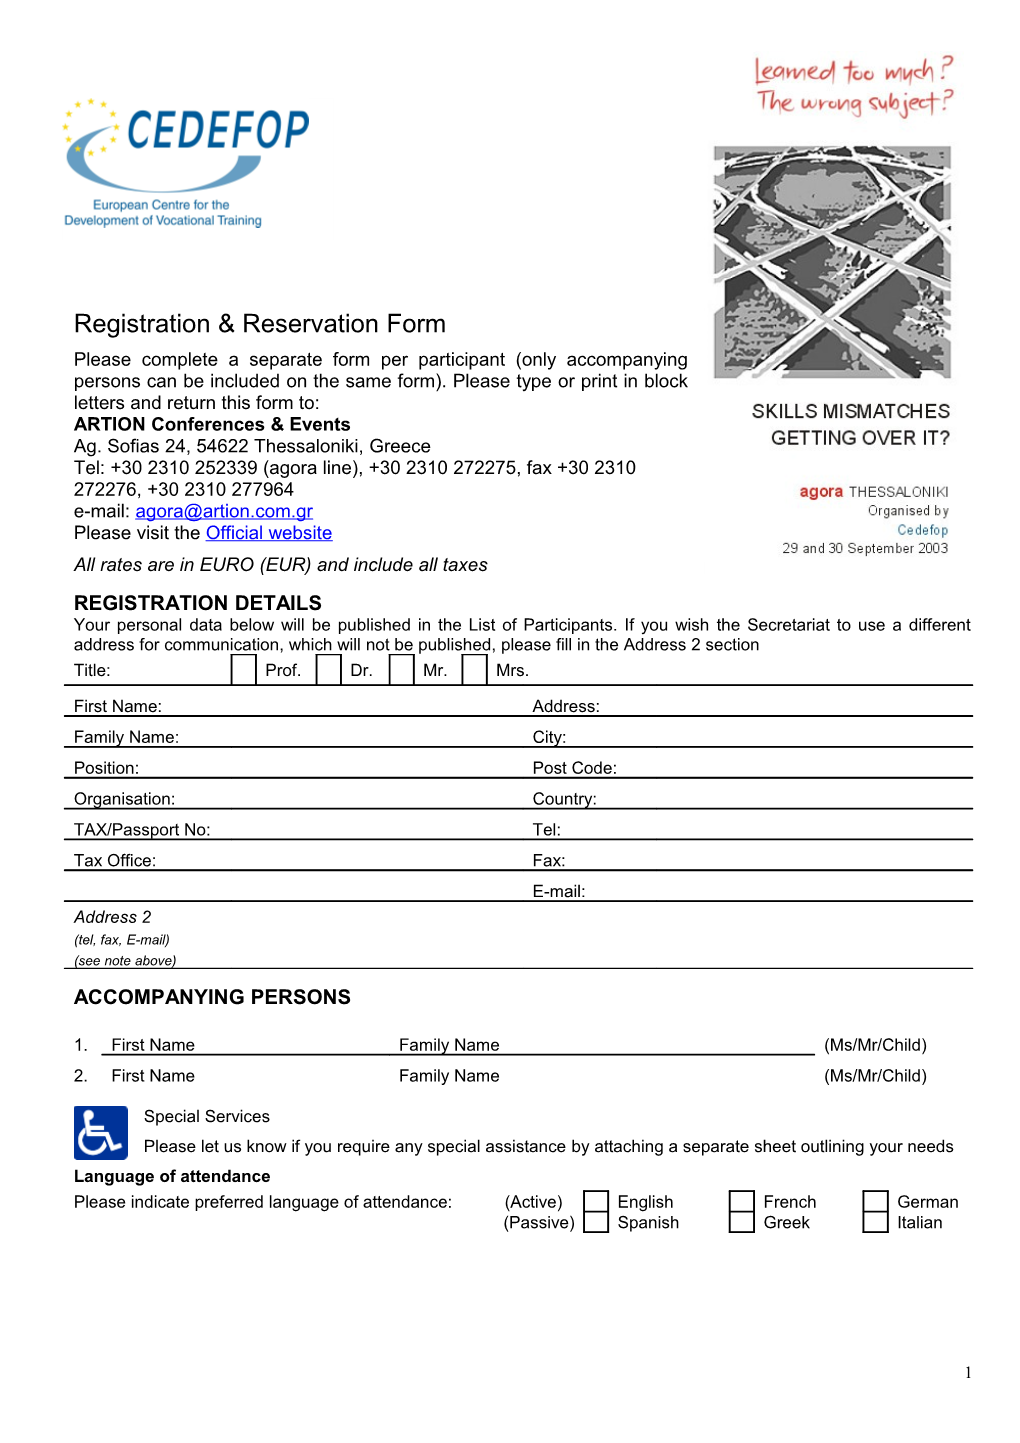 Registration & Reservation Form